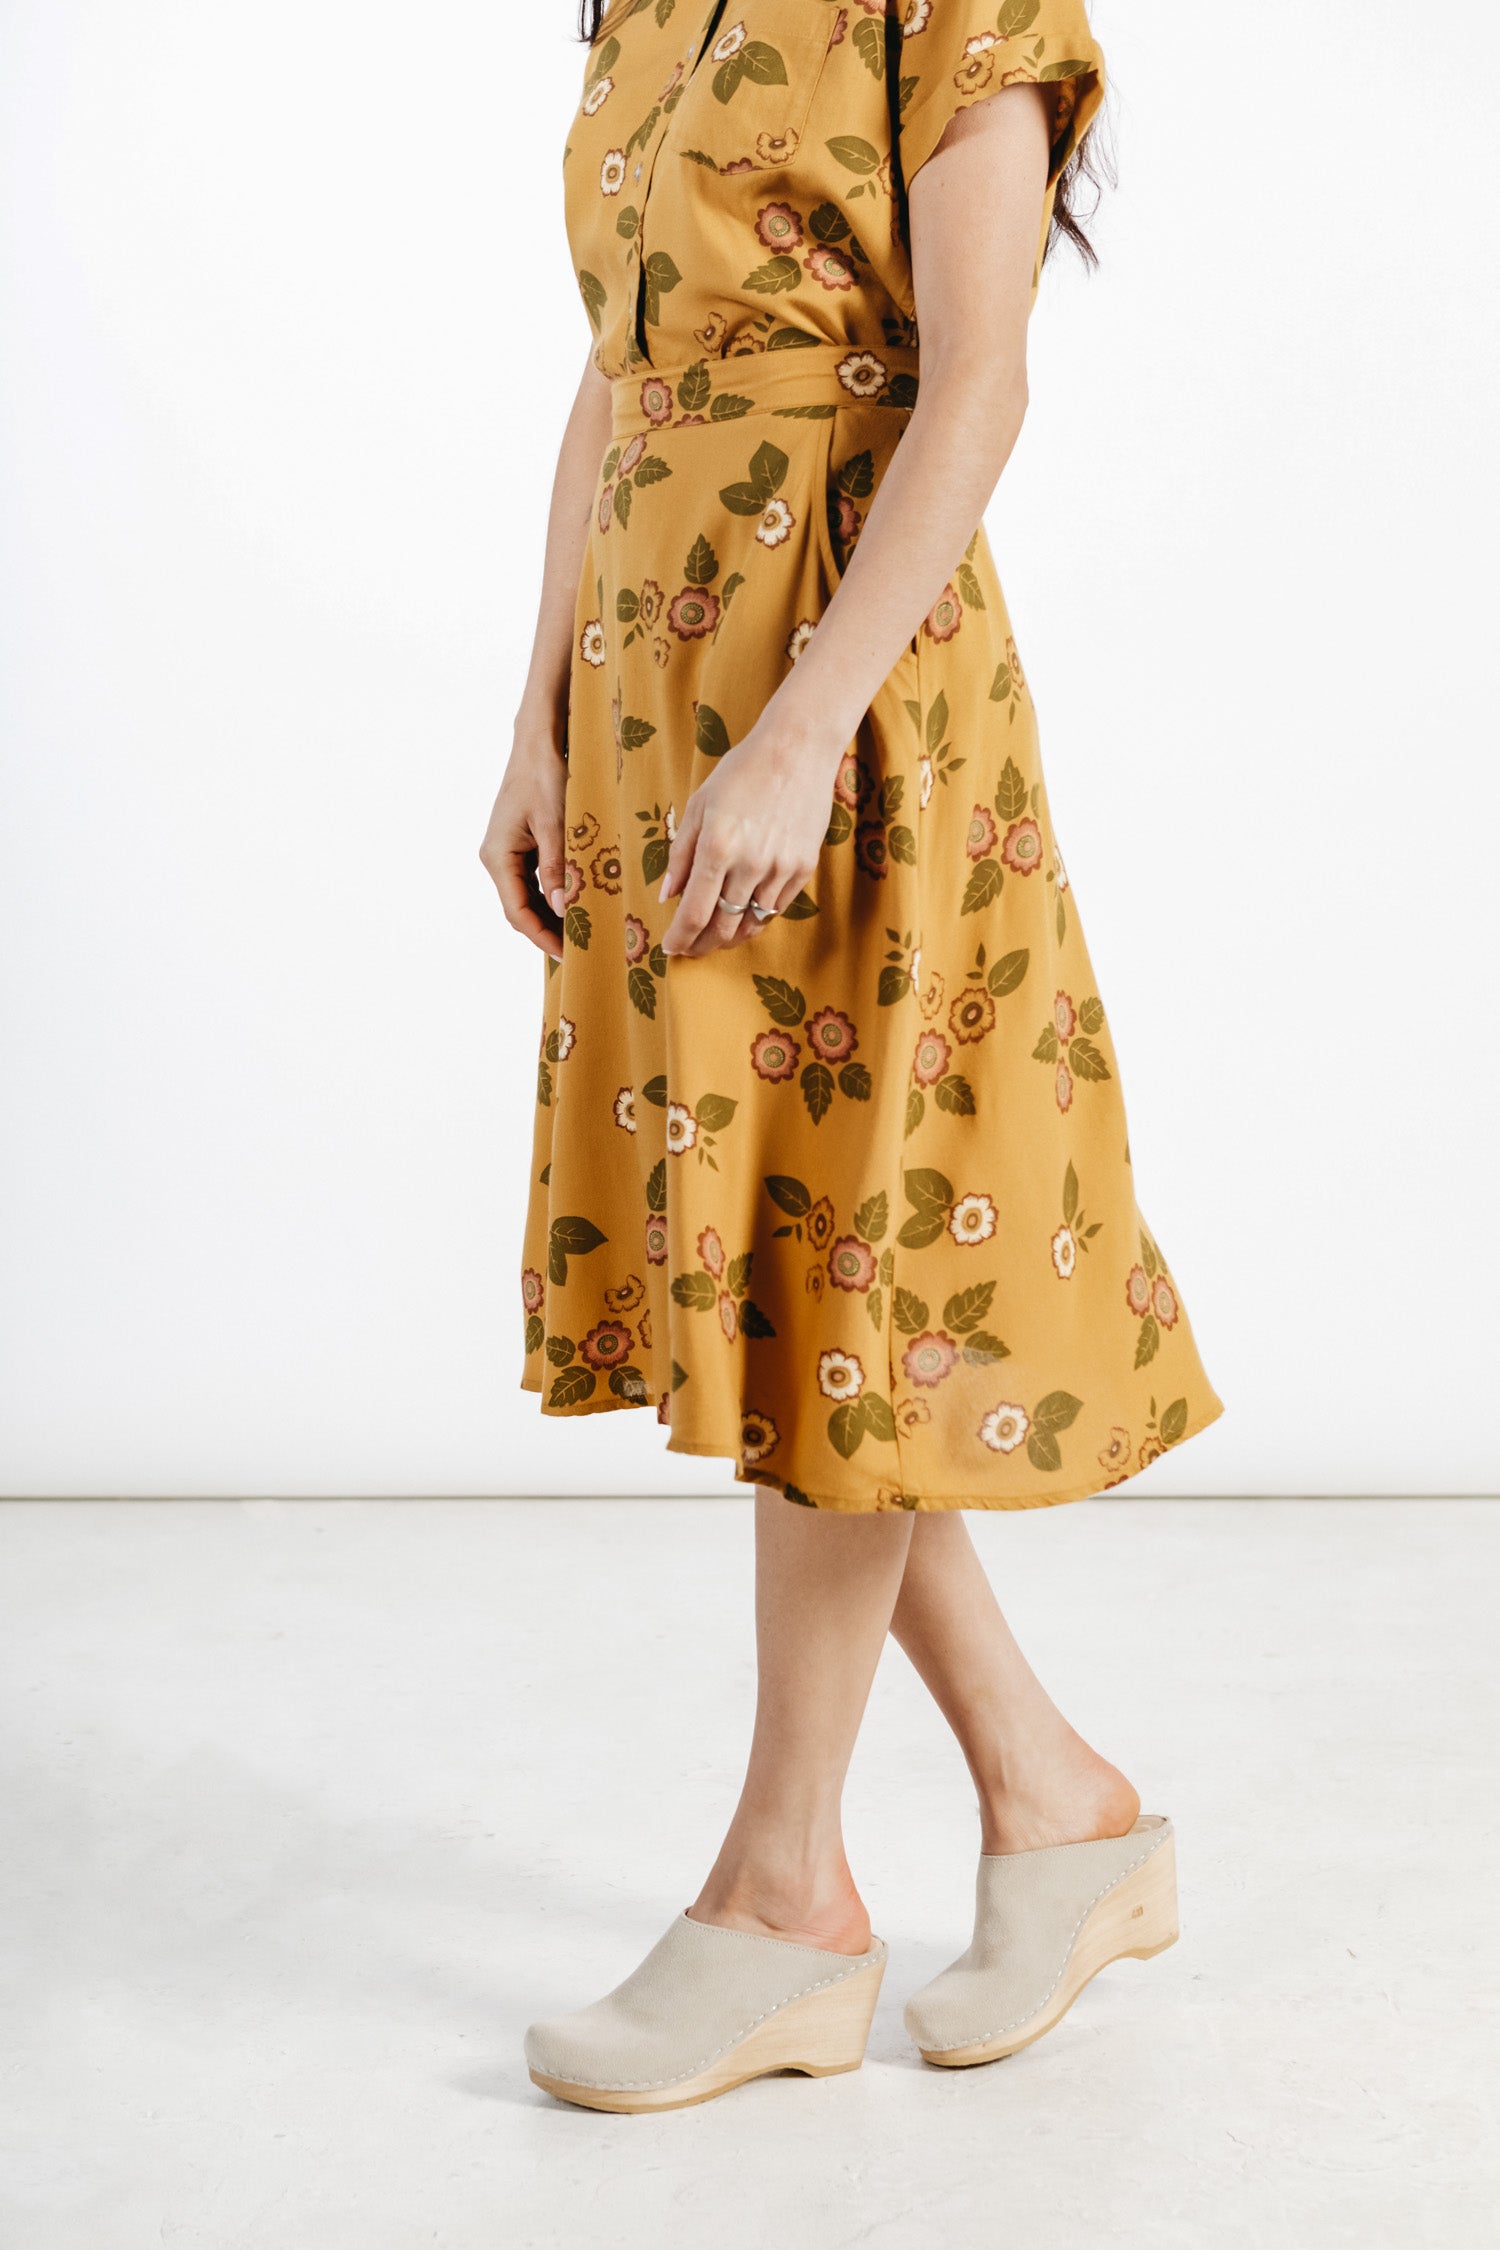 Cara Skirt / Folk Floral